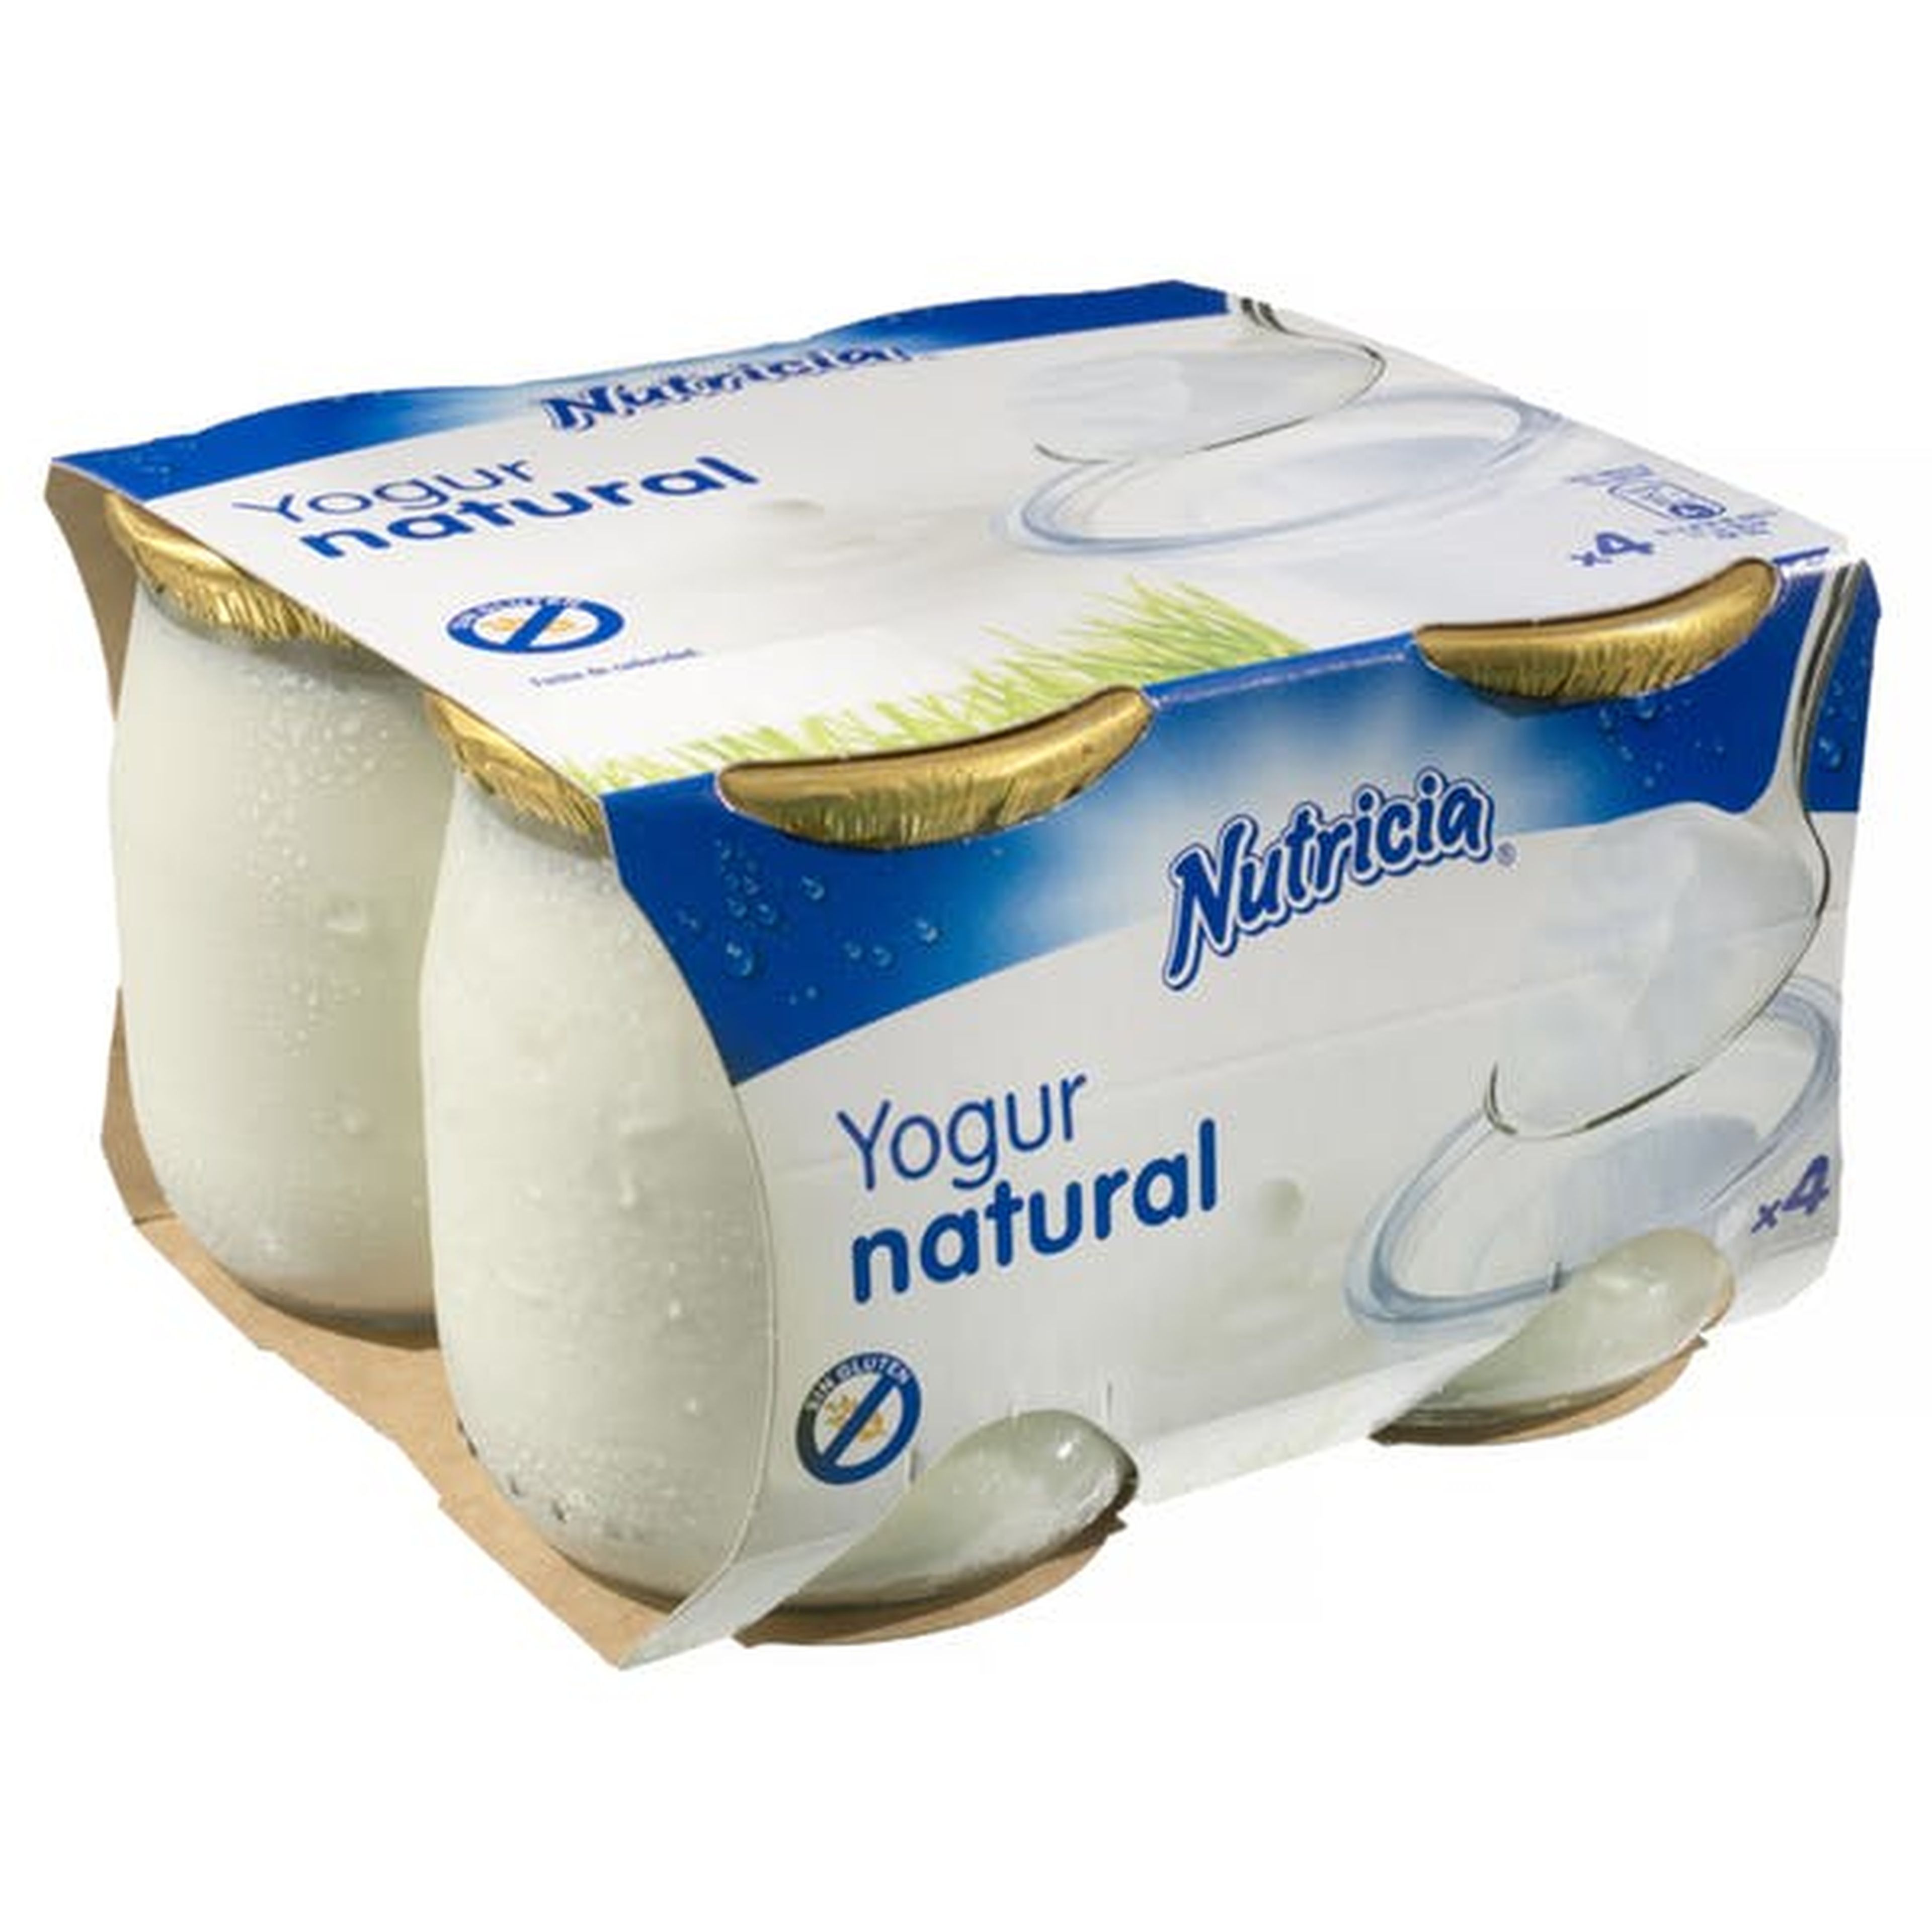 Yogurt natural Nutricia